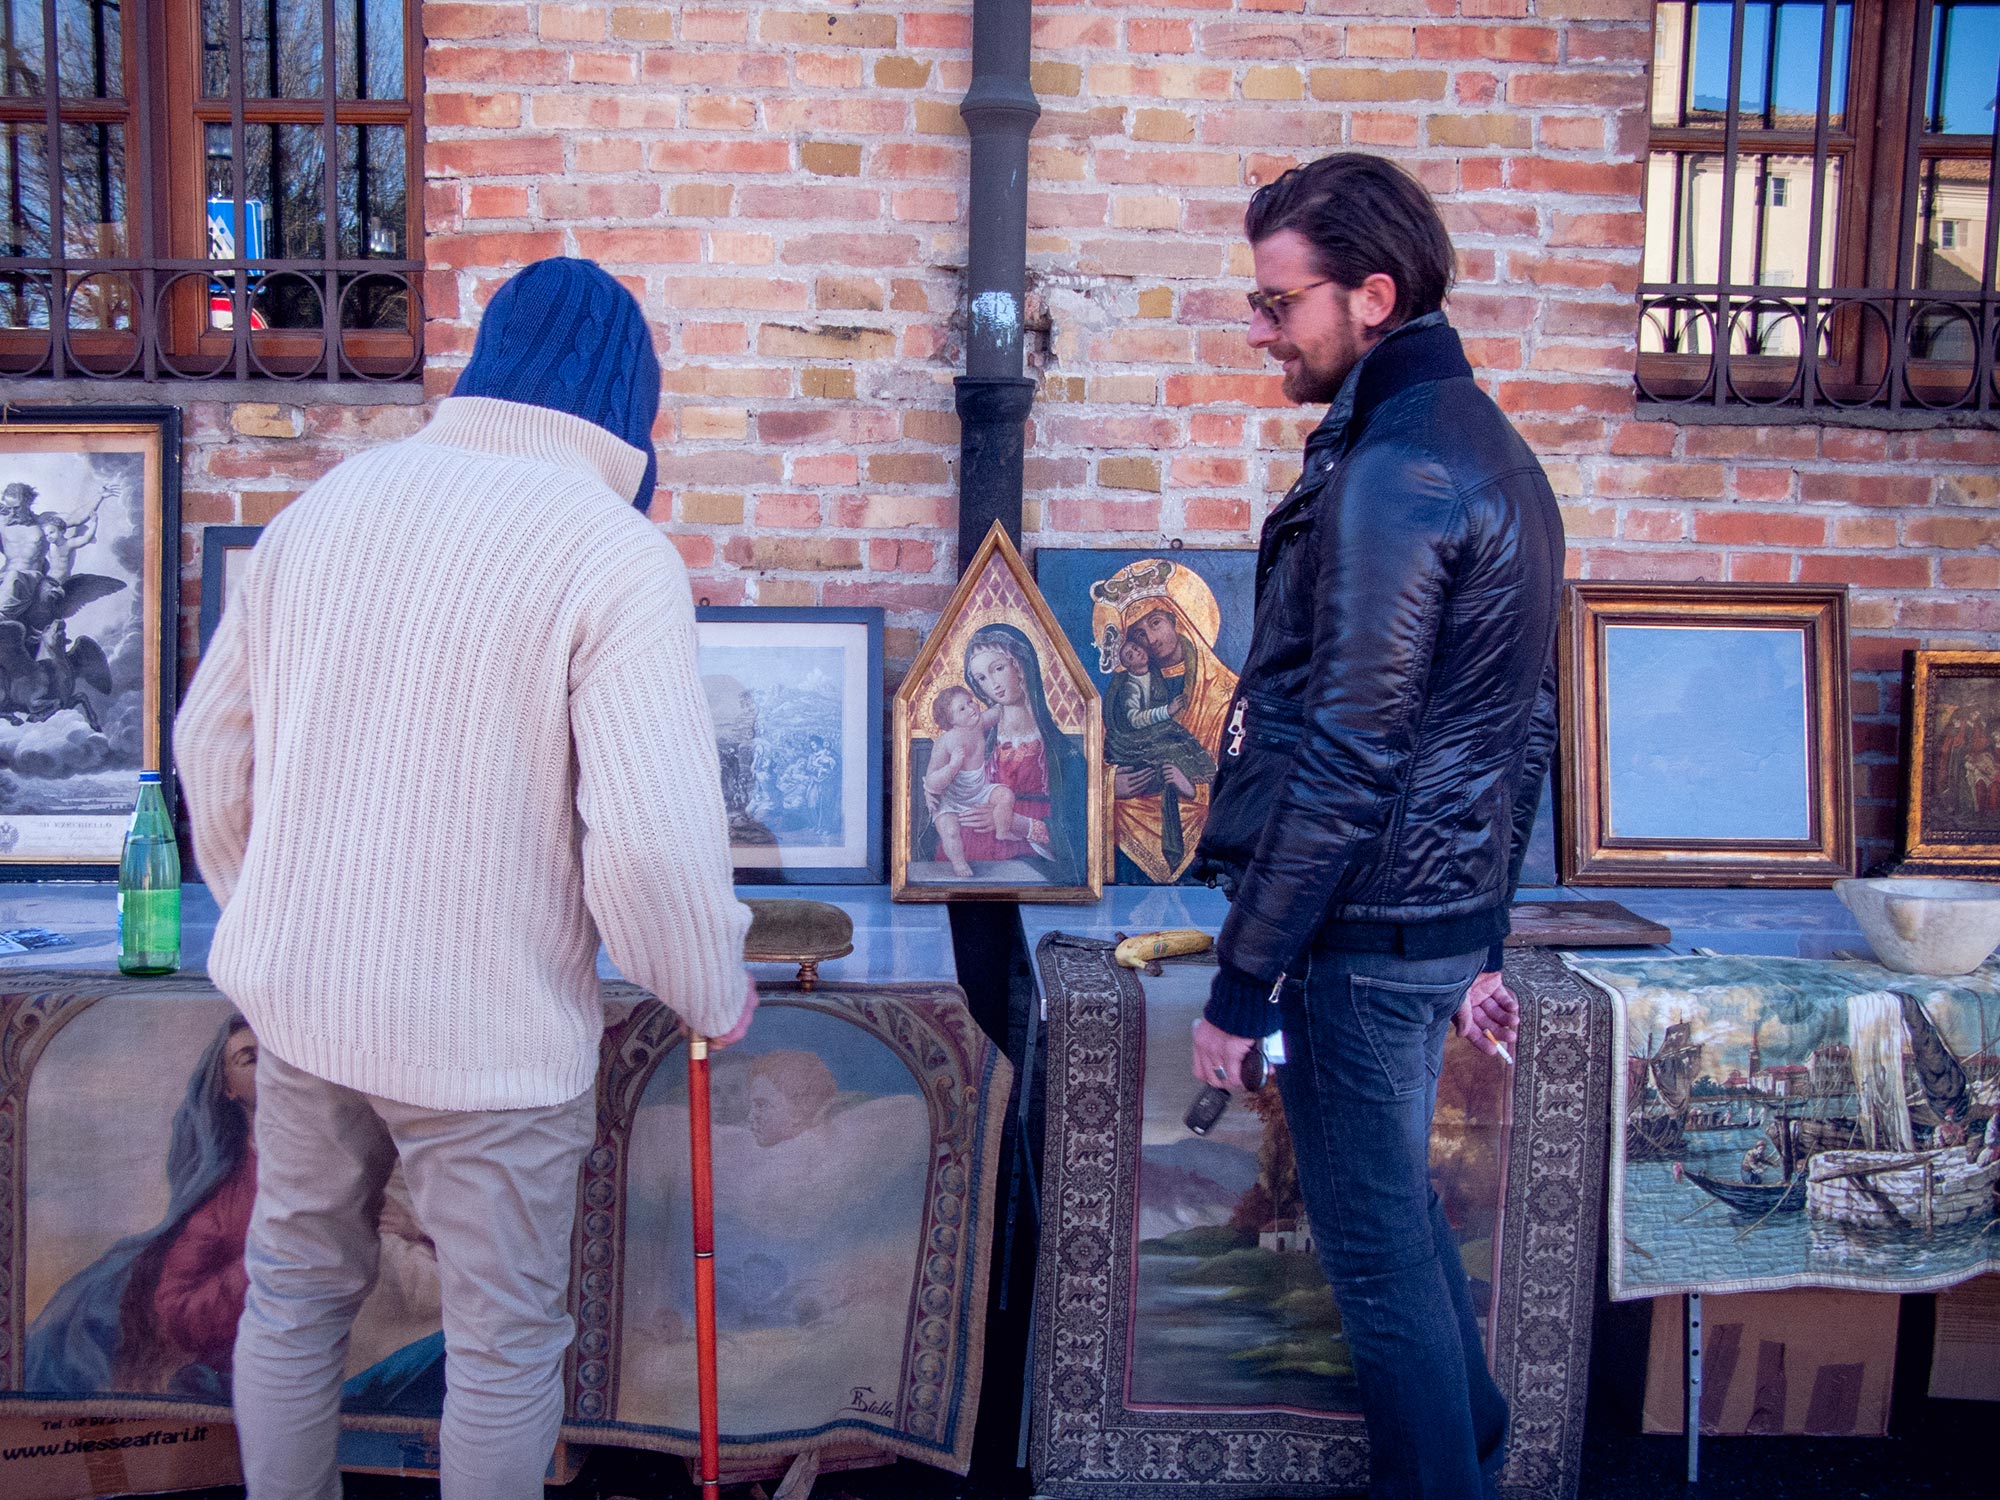 Italy Caorso Market arts